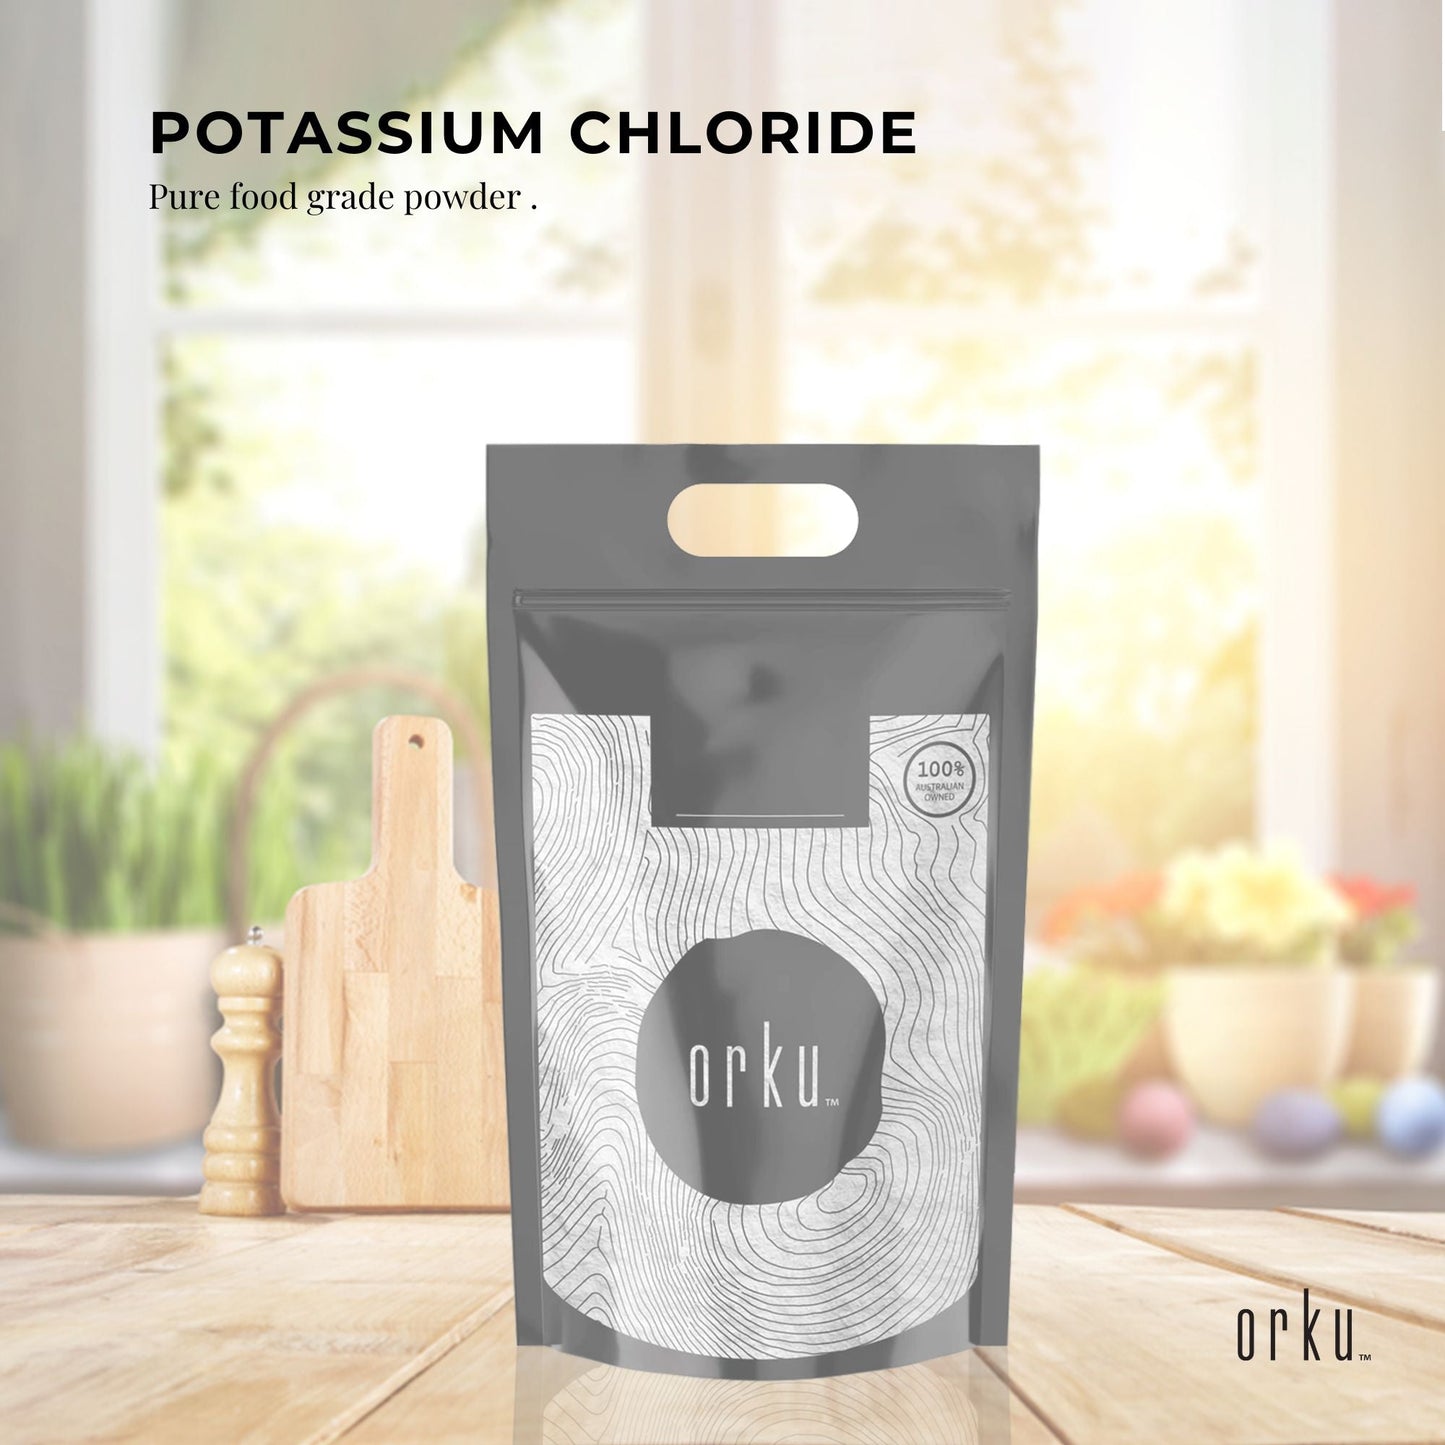 Bulk 20Kg Potassium Chloride Powder Tub - Pure KCL E508 Food Grade Supplement